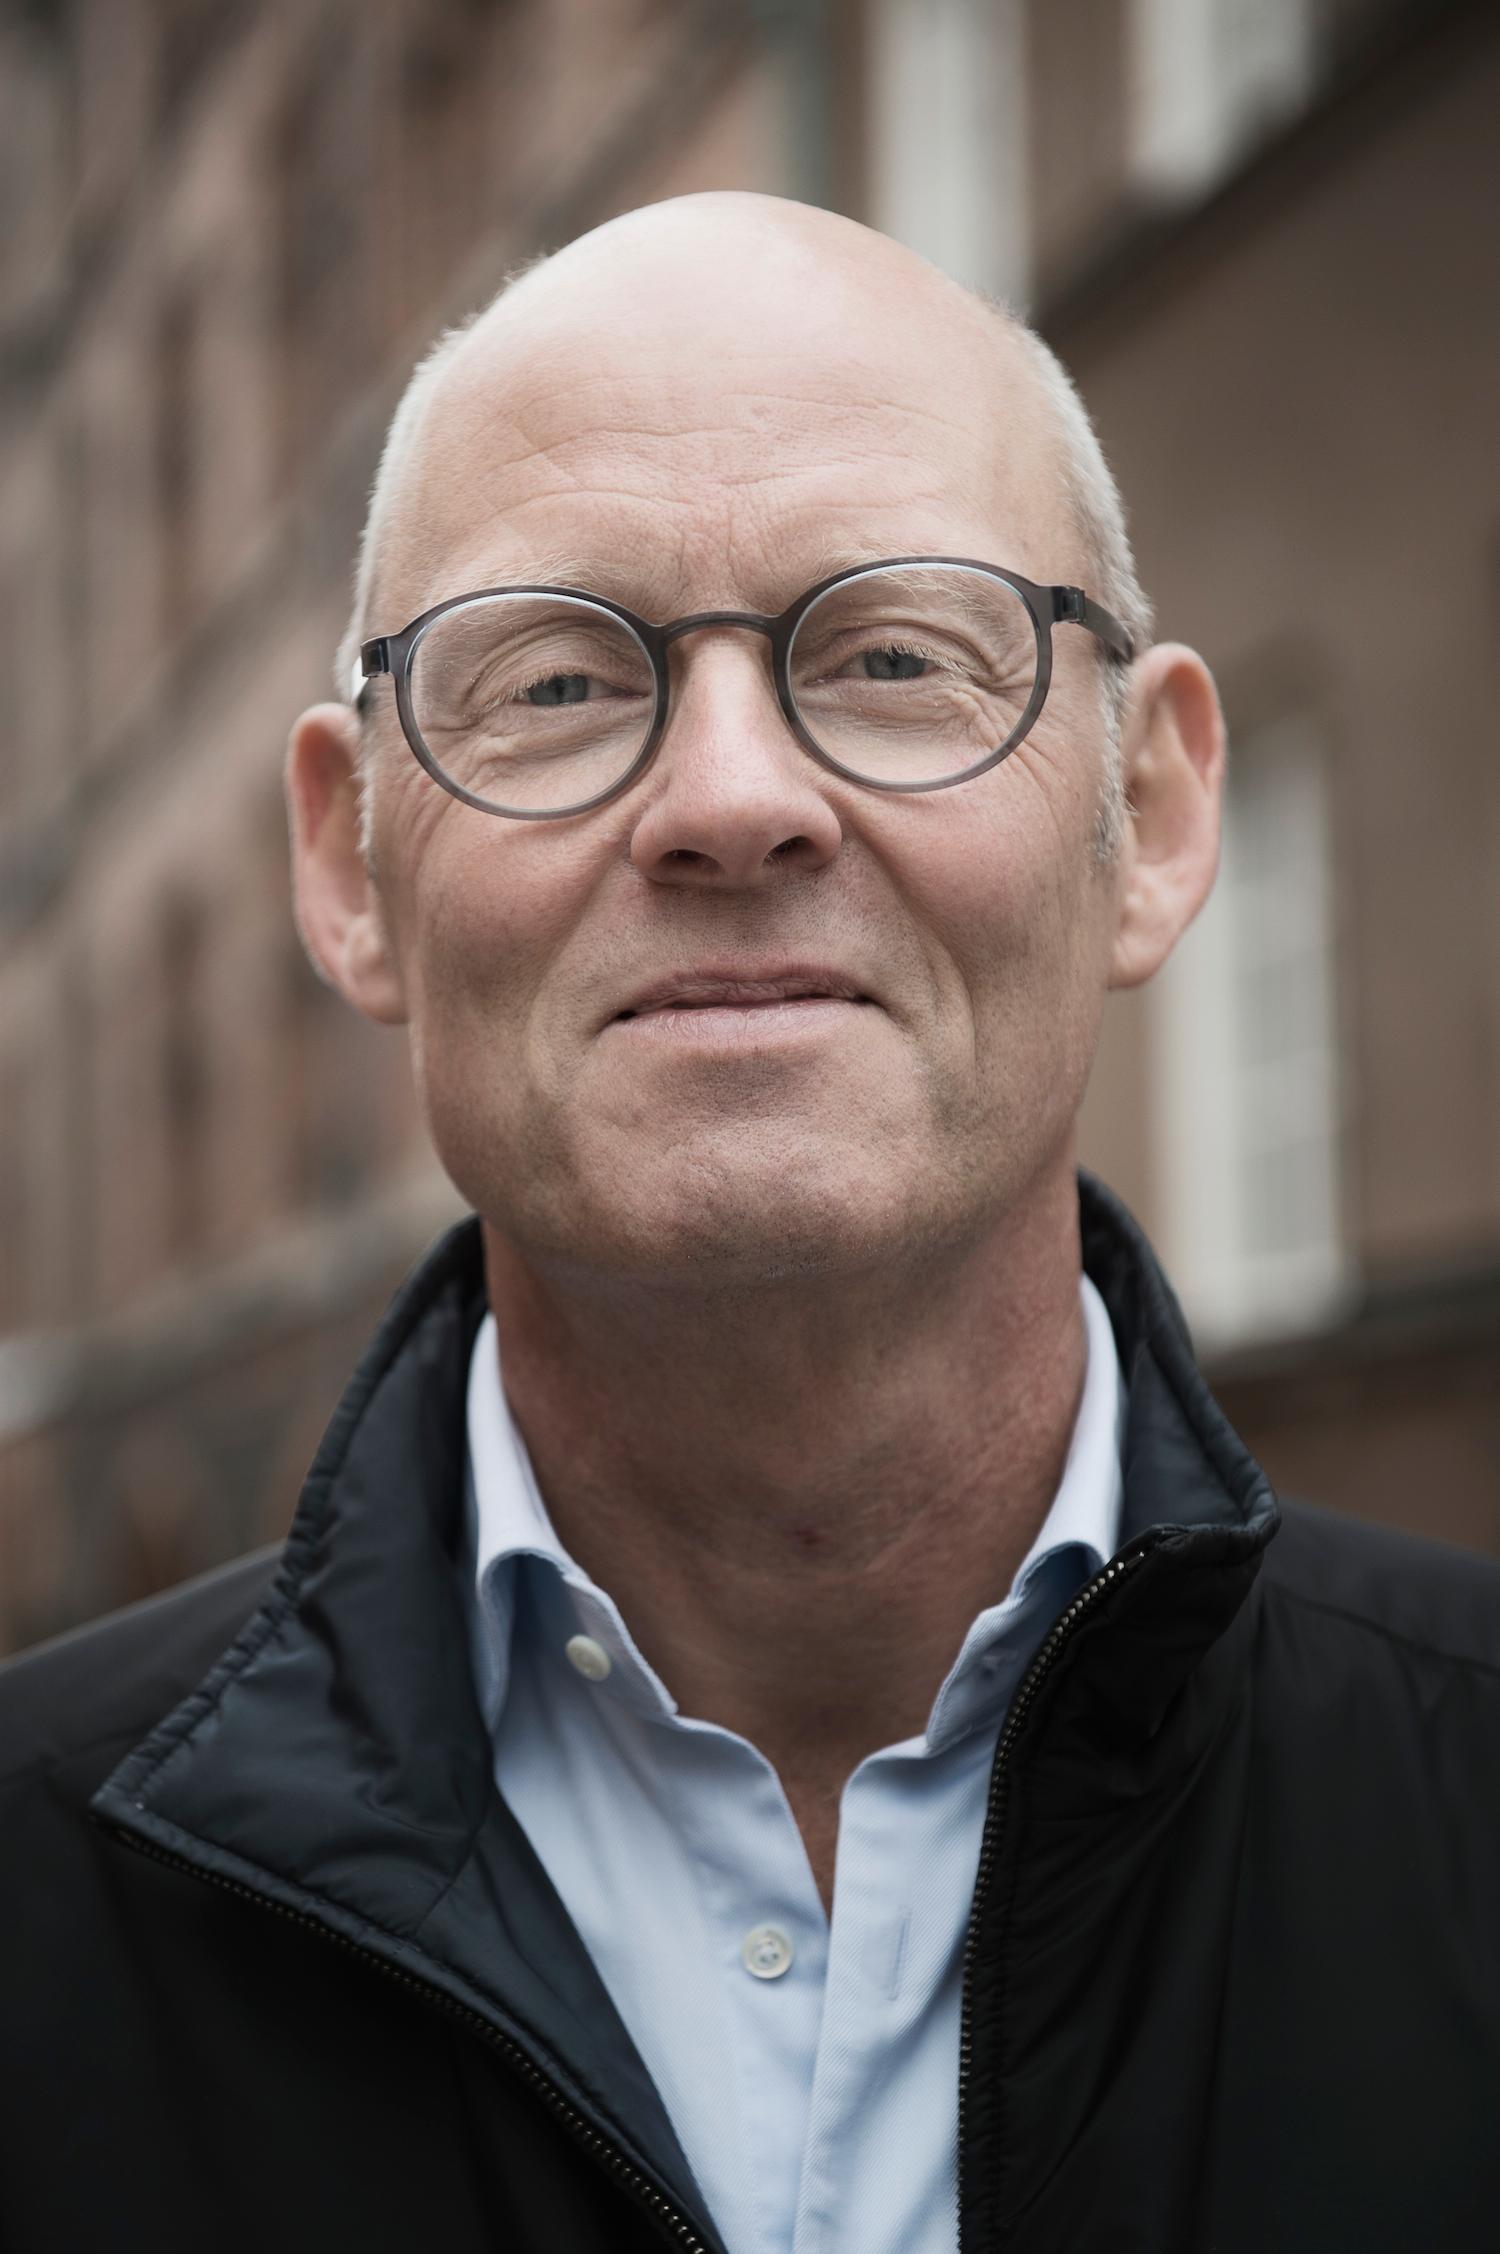 Second opinion "Ta reda på fakta och skaffa dig en second opinion", råder Lars Murman, 58, andra män som drabbats av prostatacancer.